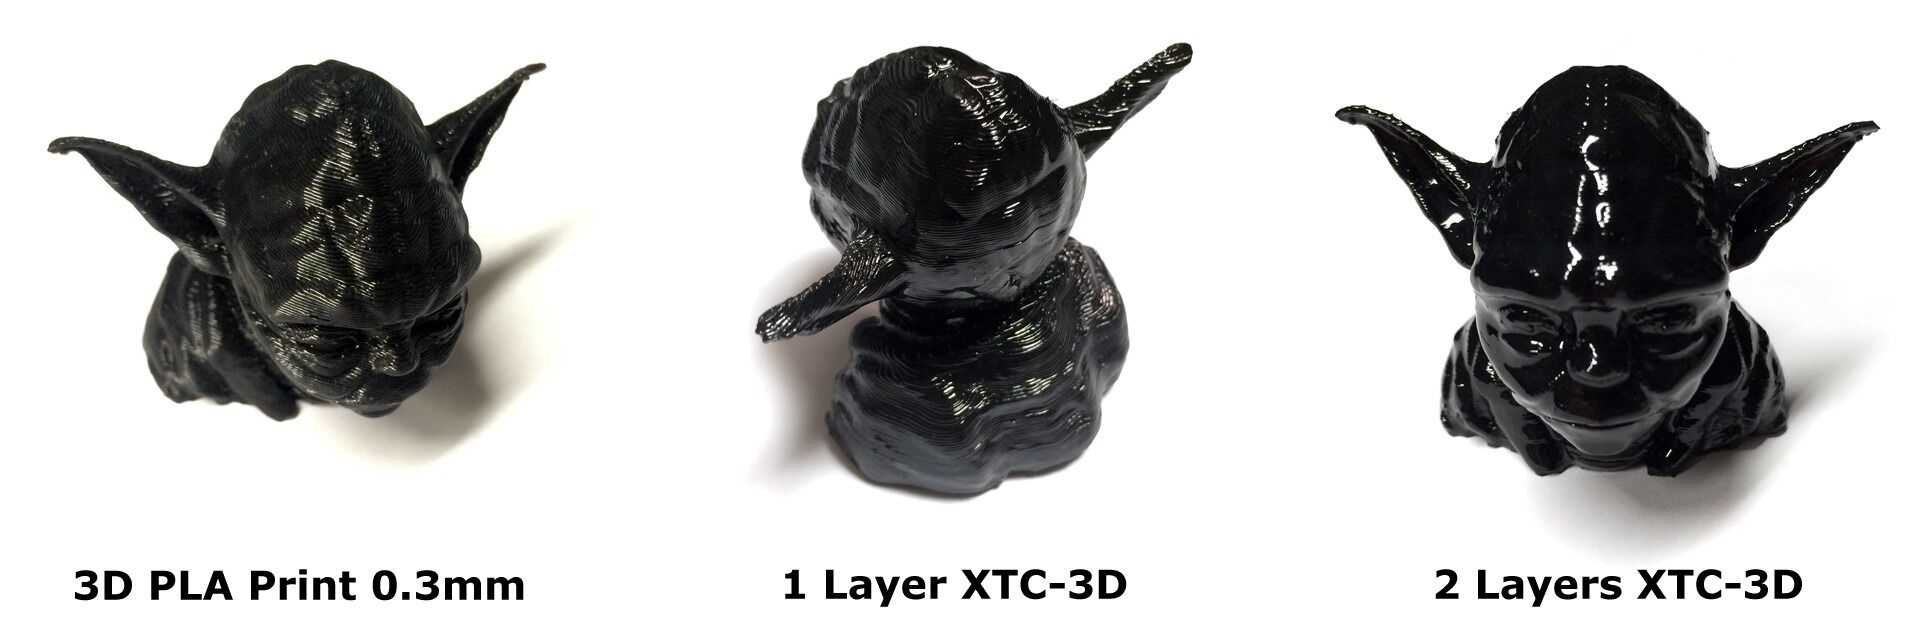 XTC-3D (644g)